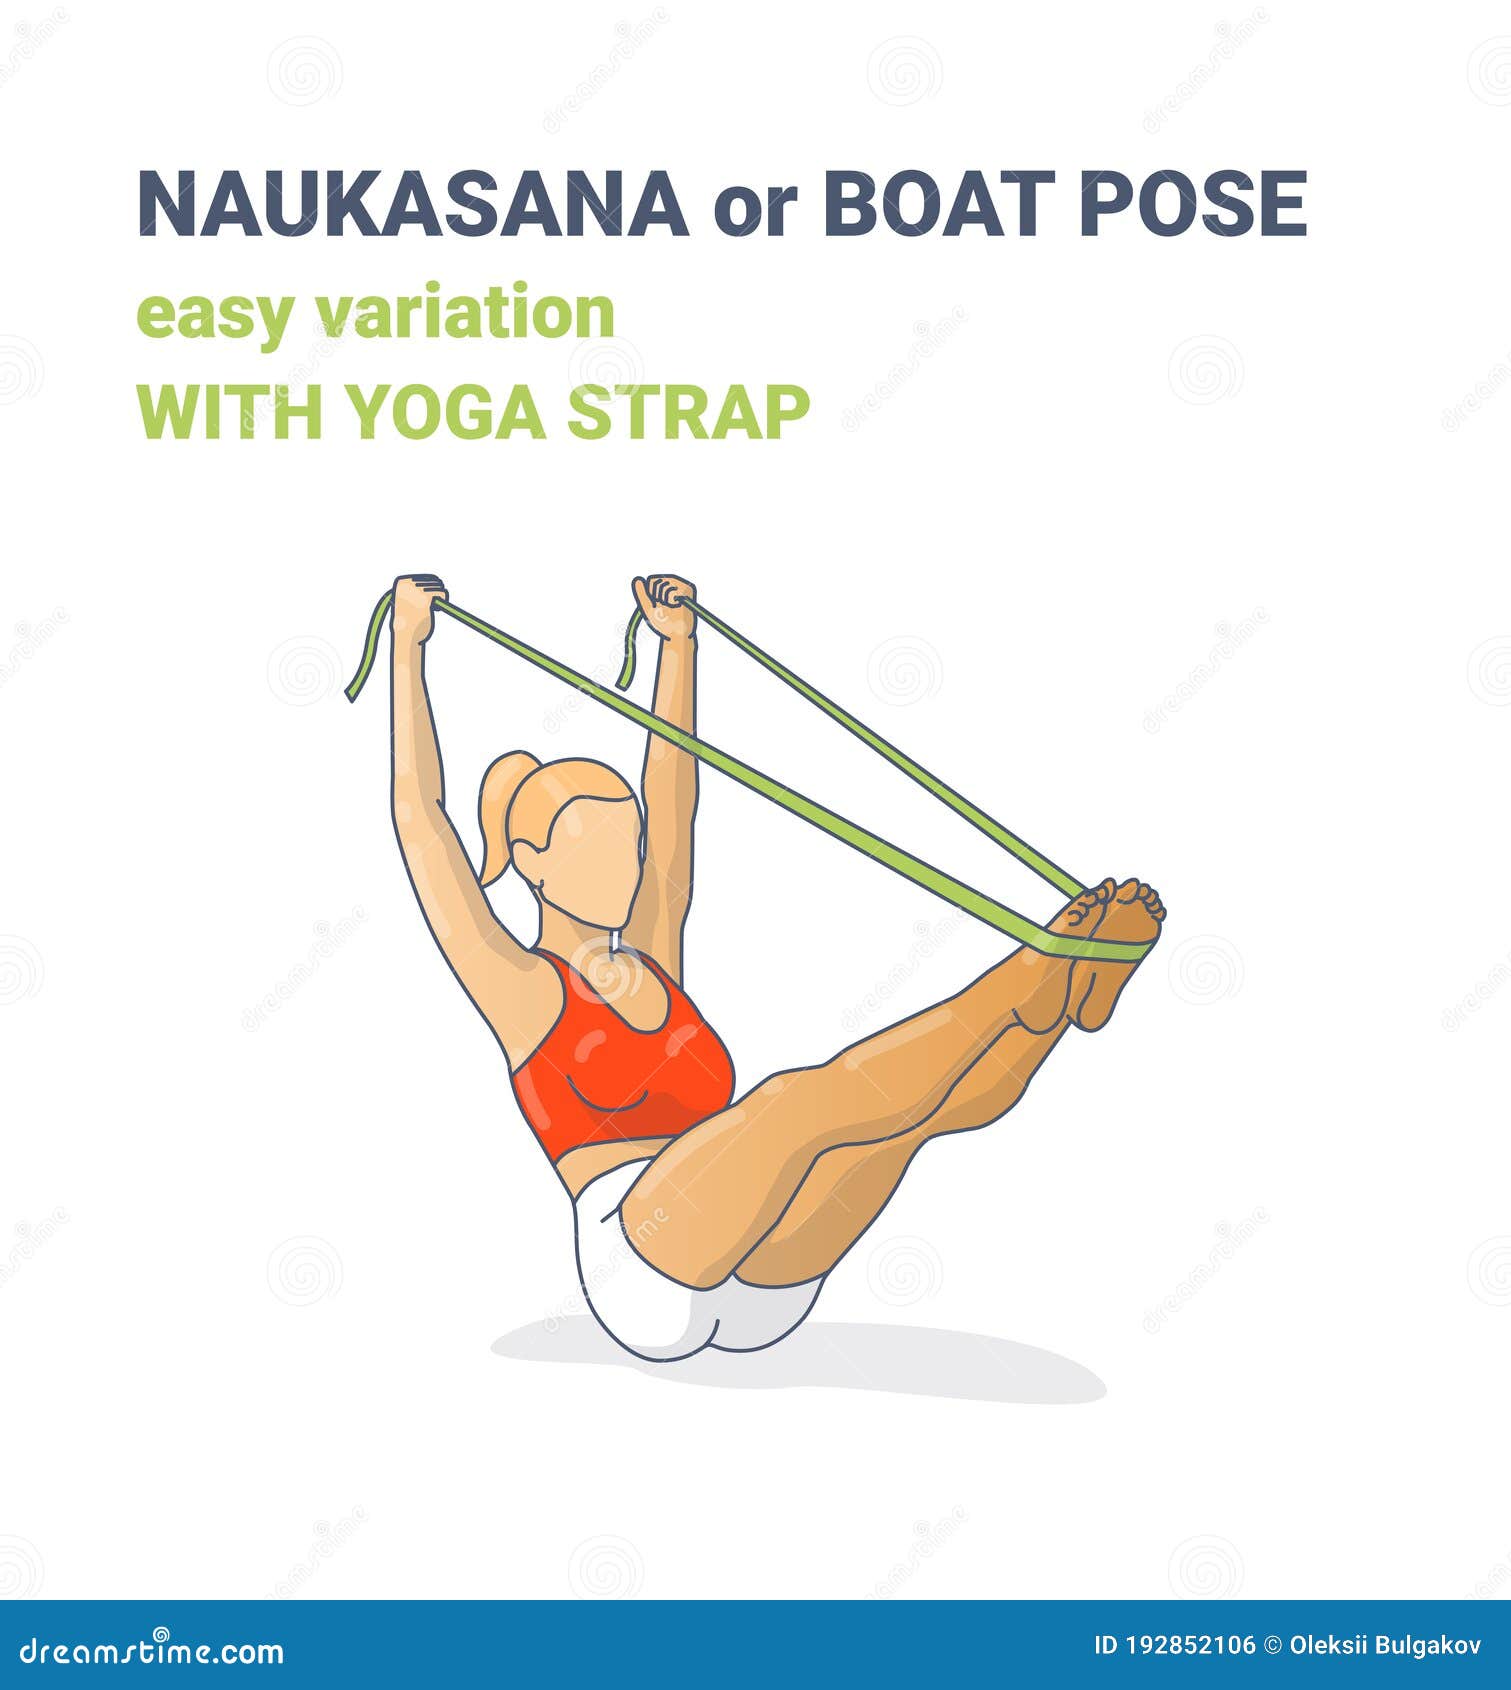 Naukasana - The Boat Pose